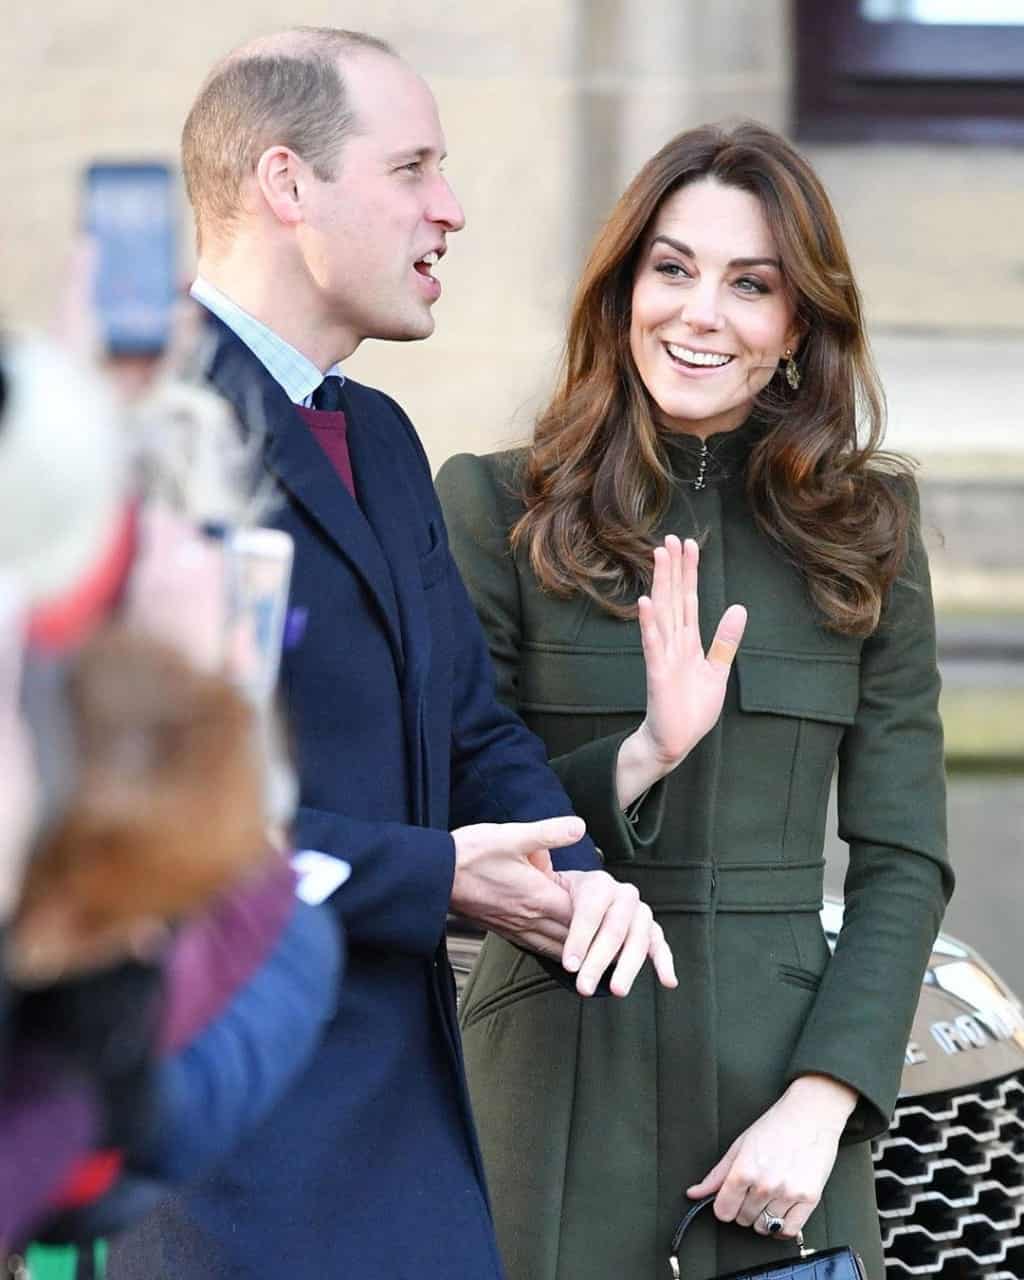 Muonekano wa kwanza wa Prince William na Kate Middleton baada ya Harry kujiuzulu